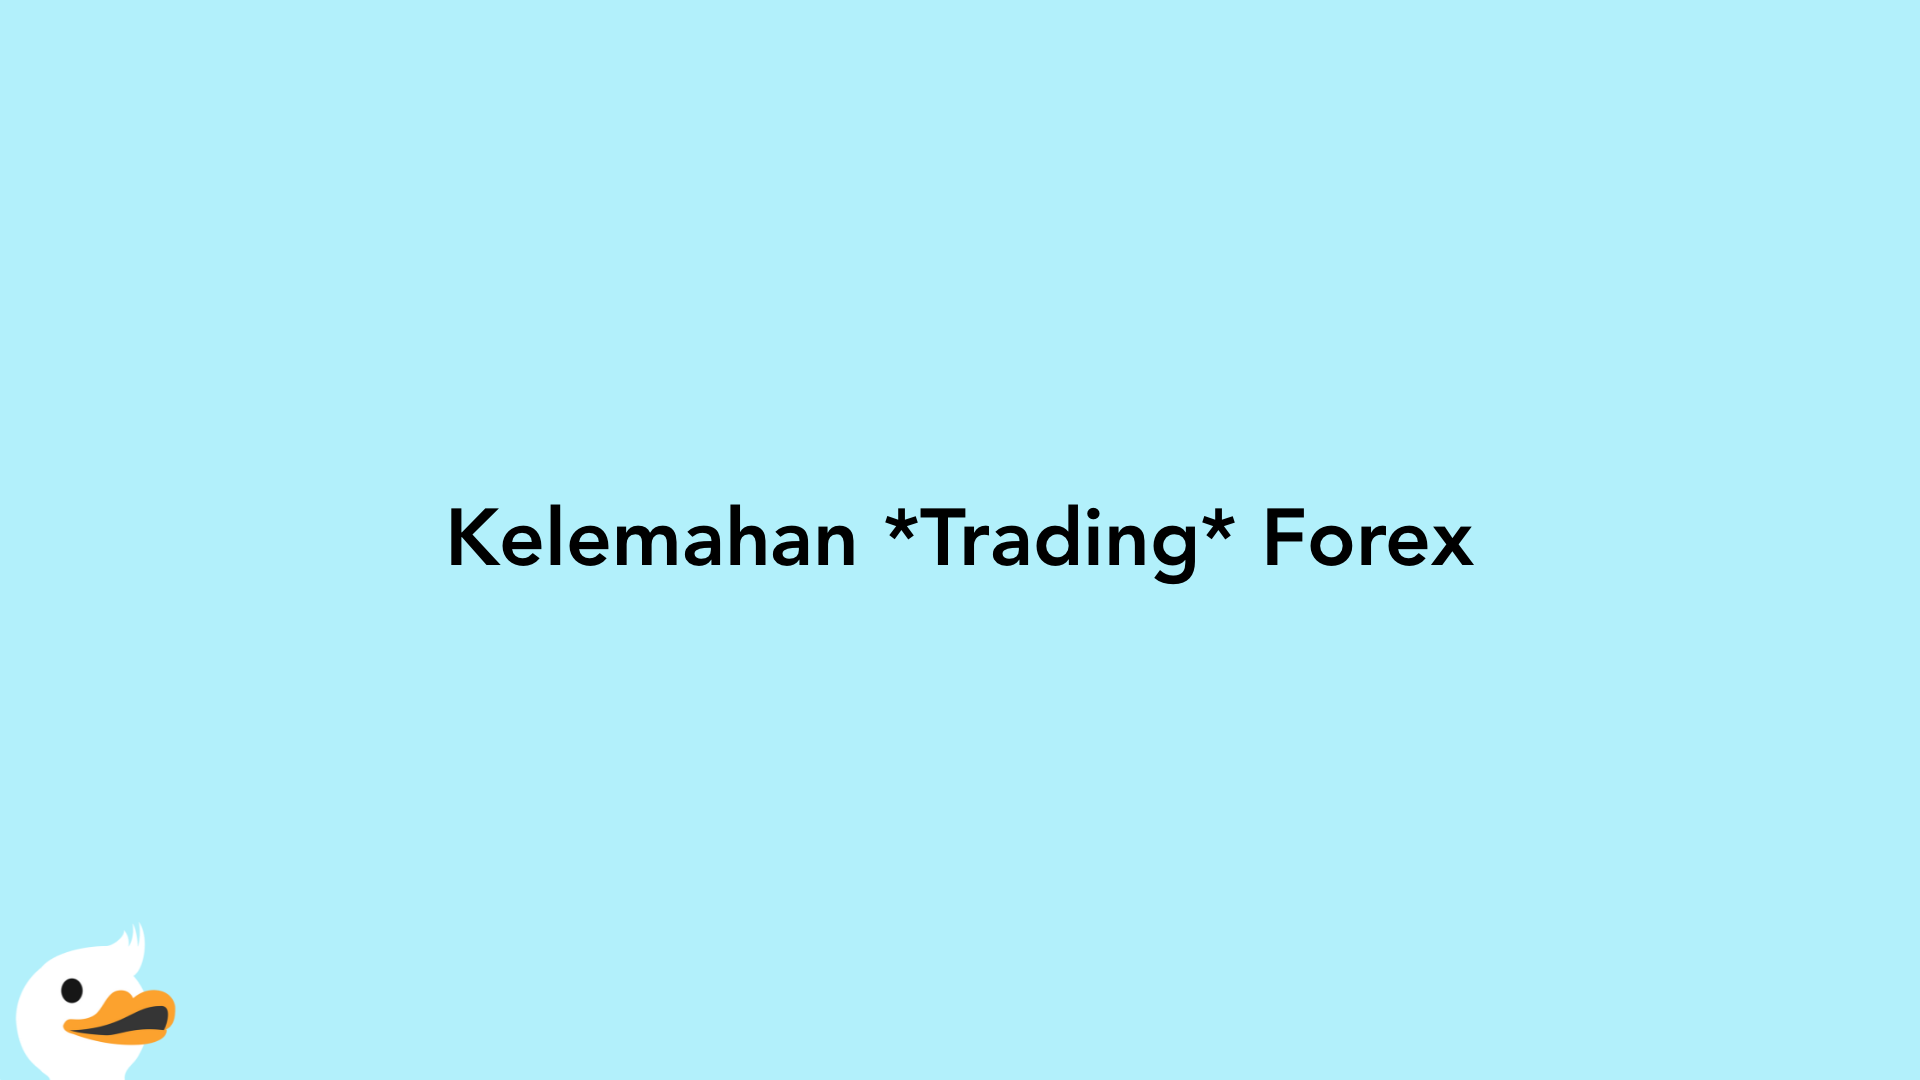 Kelemahan Trading Forex